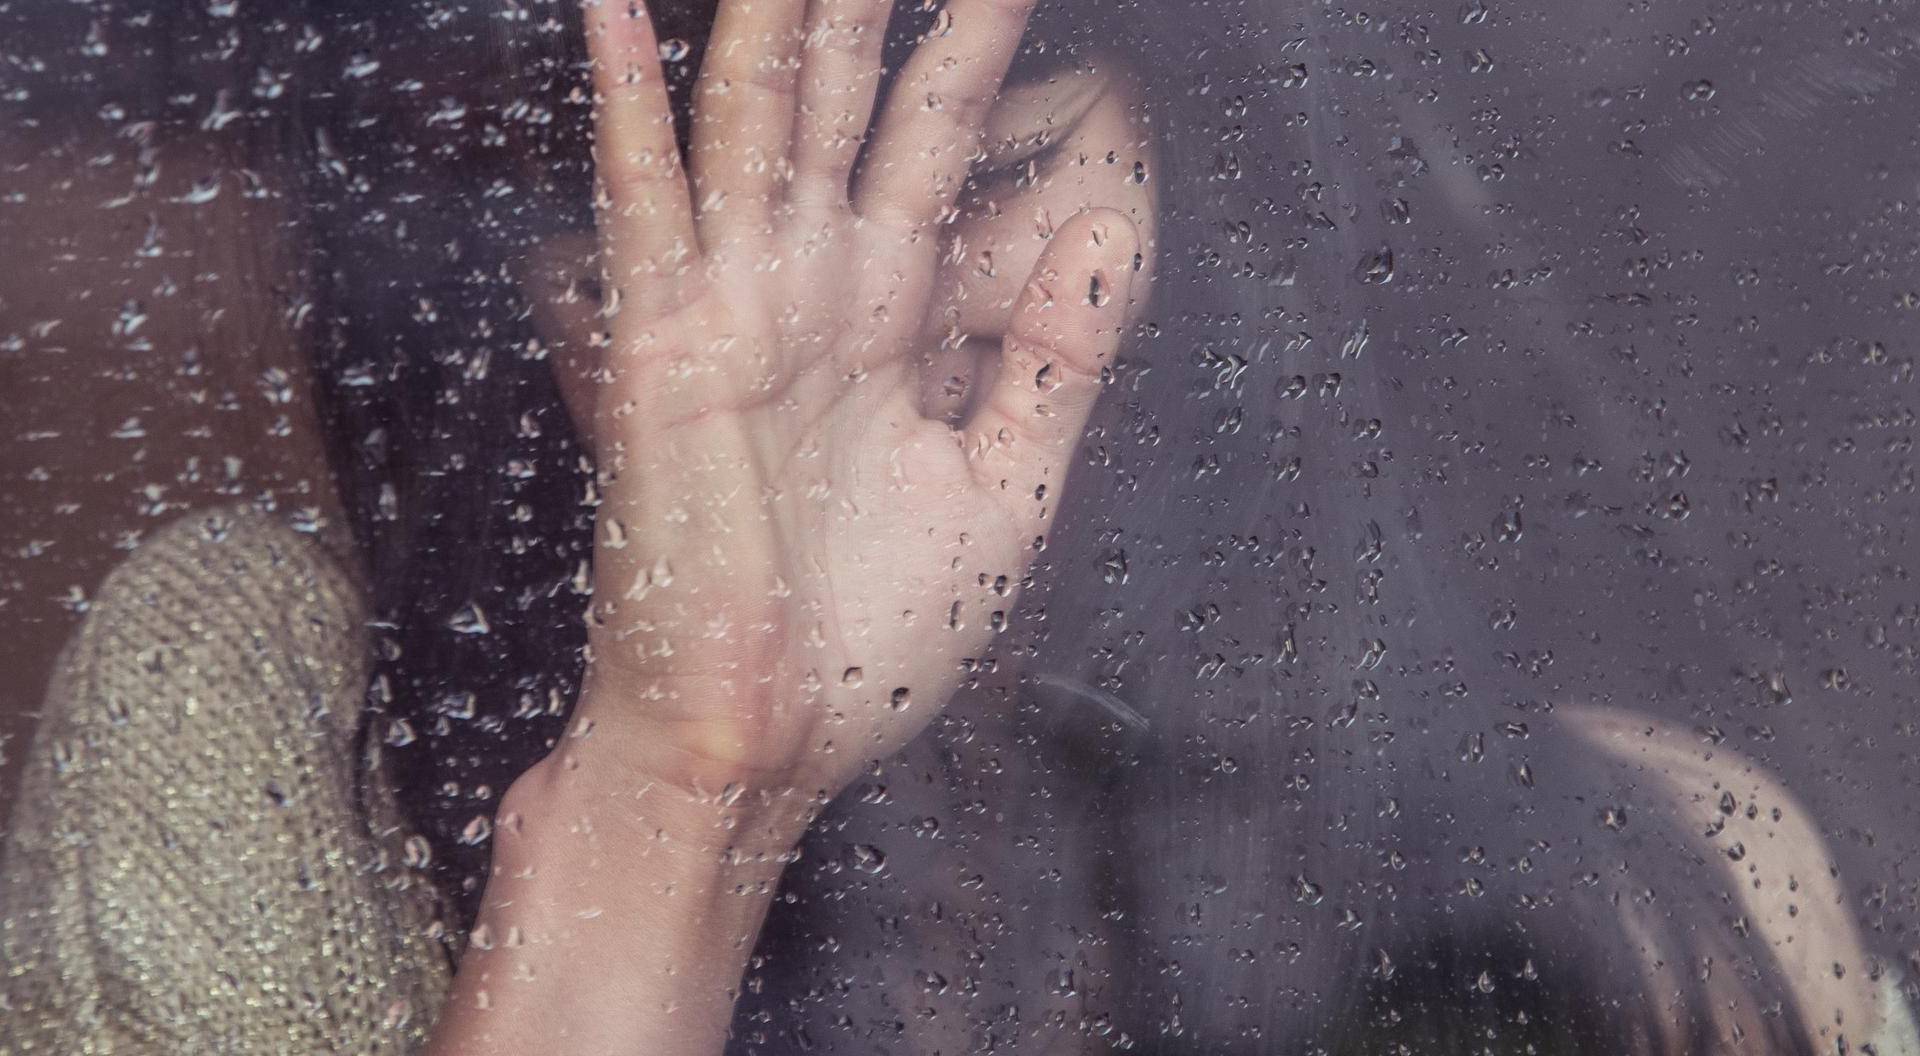 'Nije me udario': Mračna priča žene o zlostavljanju u odnosu